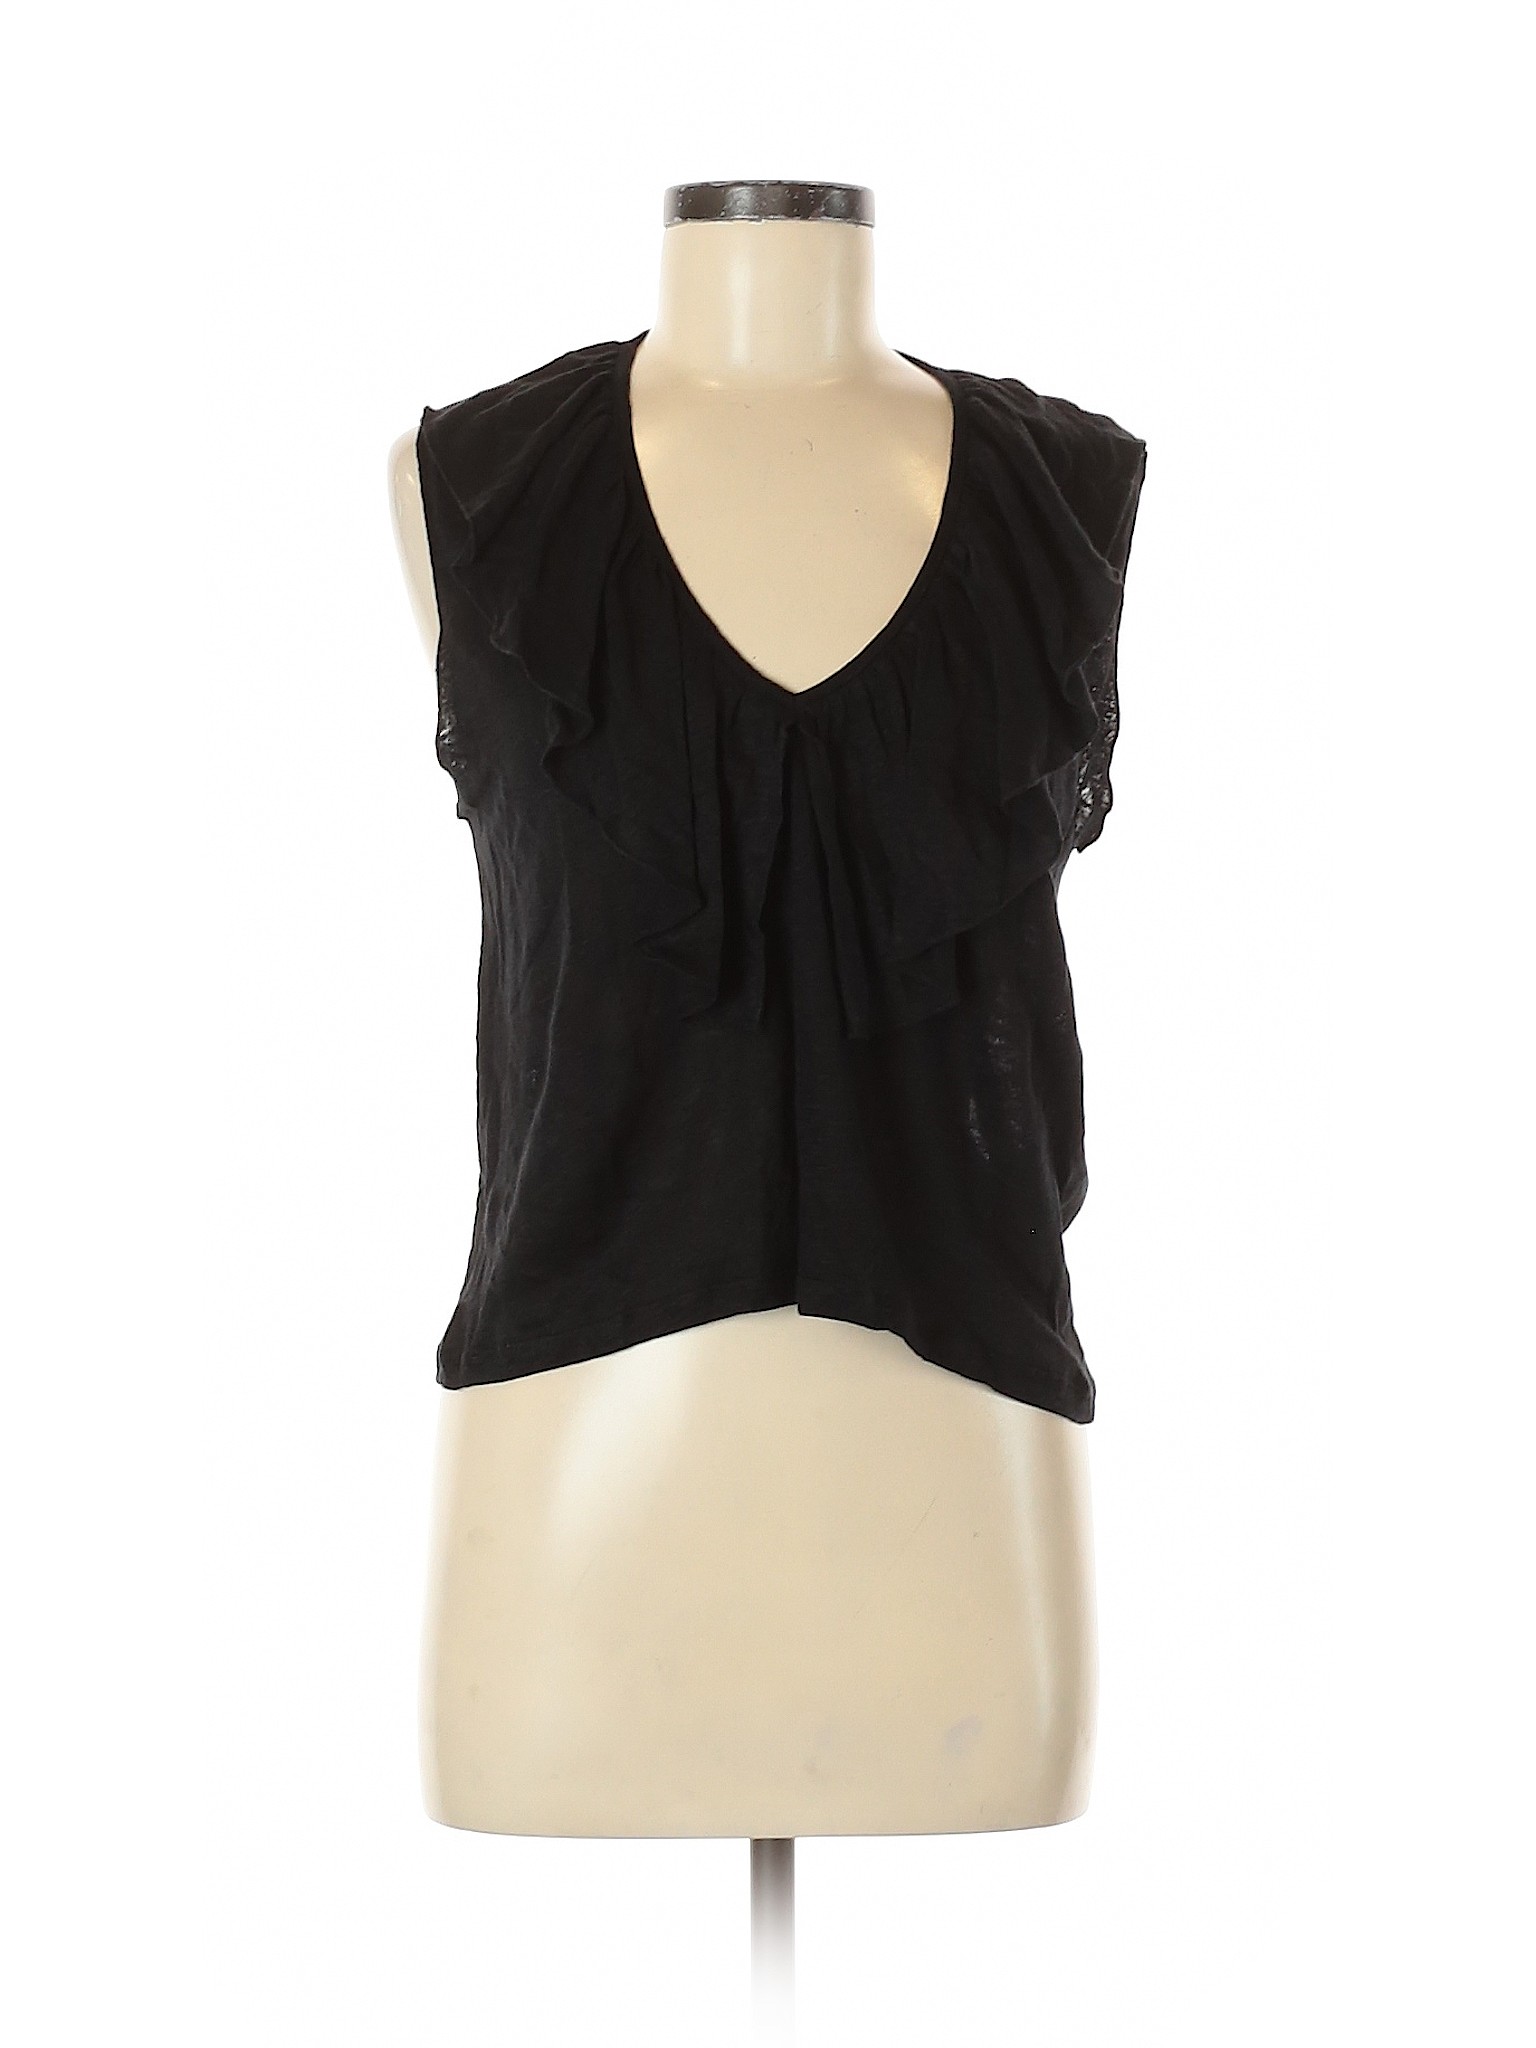 Zara Women Black Sleeveless Top S | eBay